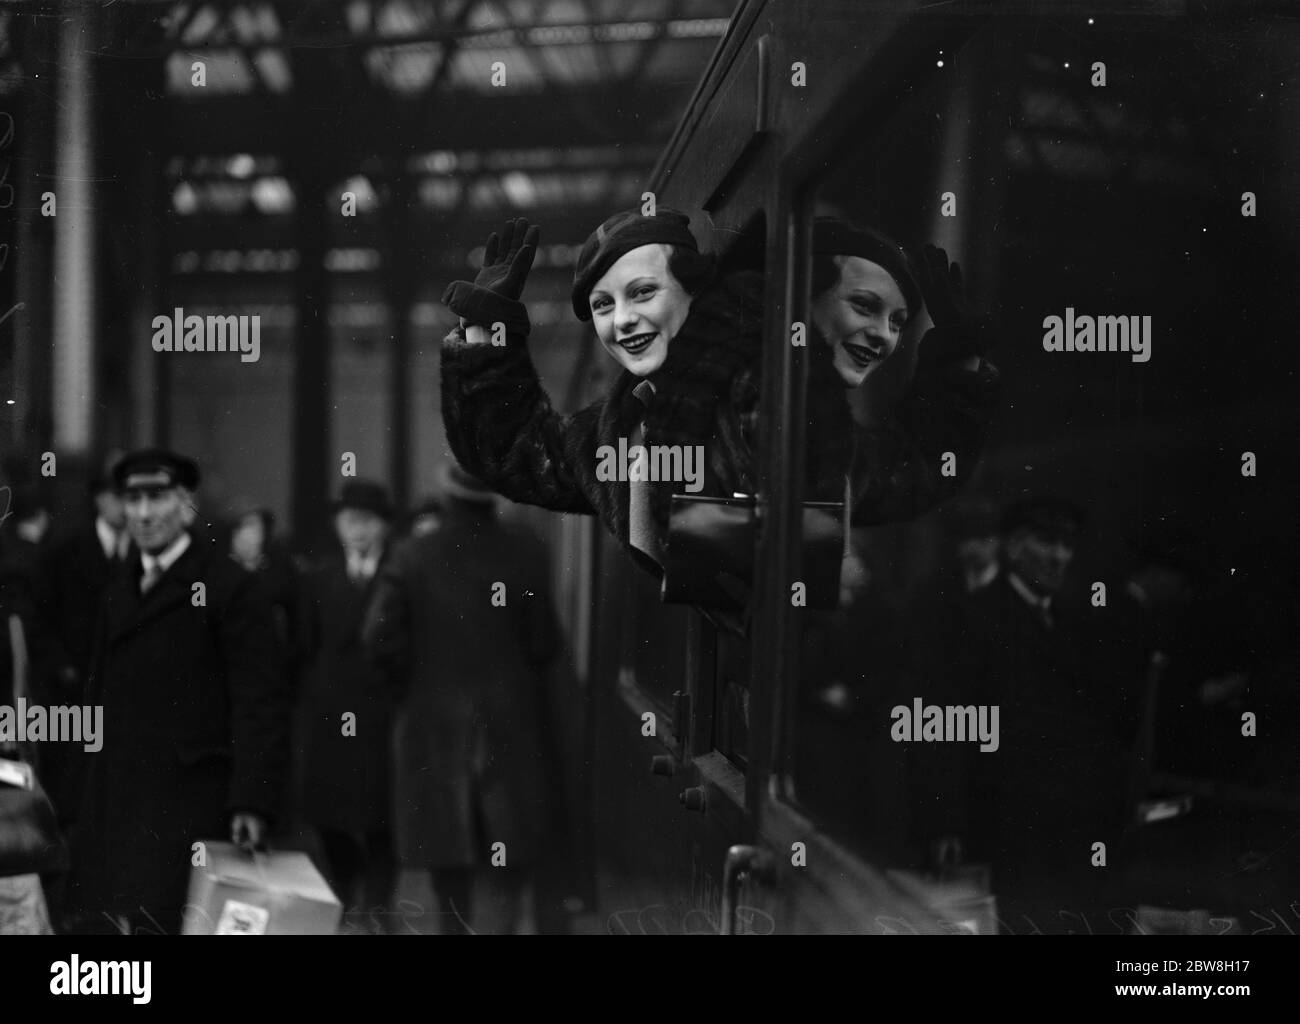 Bateau de Noël à New York . Renee Gadd , la star de scène et de film préférée qui dit au revoir alors que le train quittait Waterloo . 14 décembre 1933 Banque D'Images